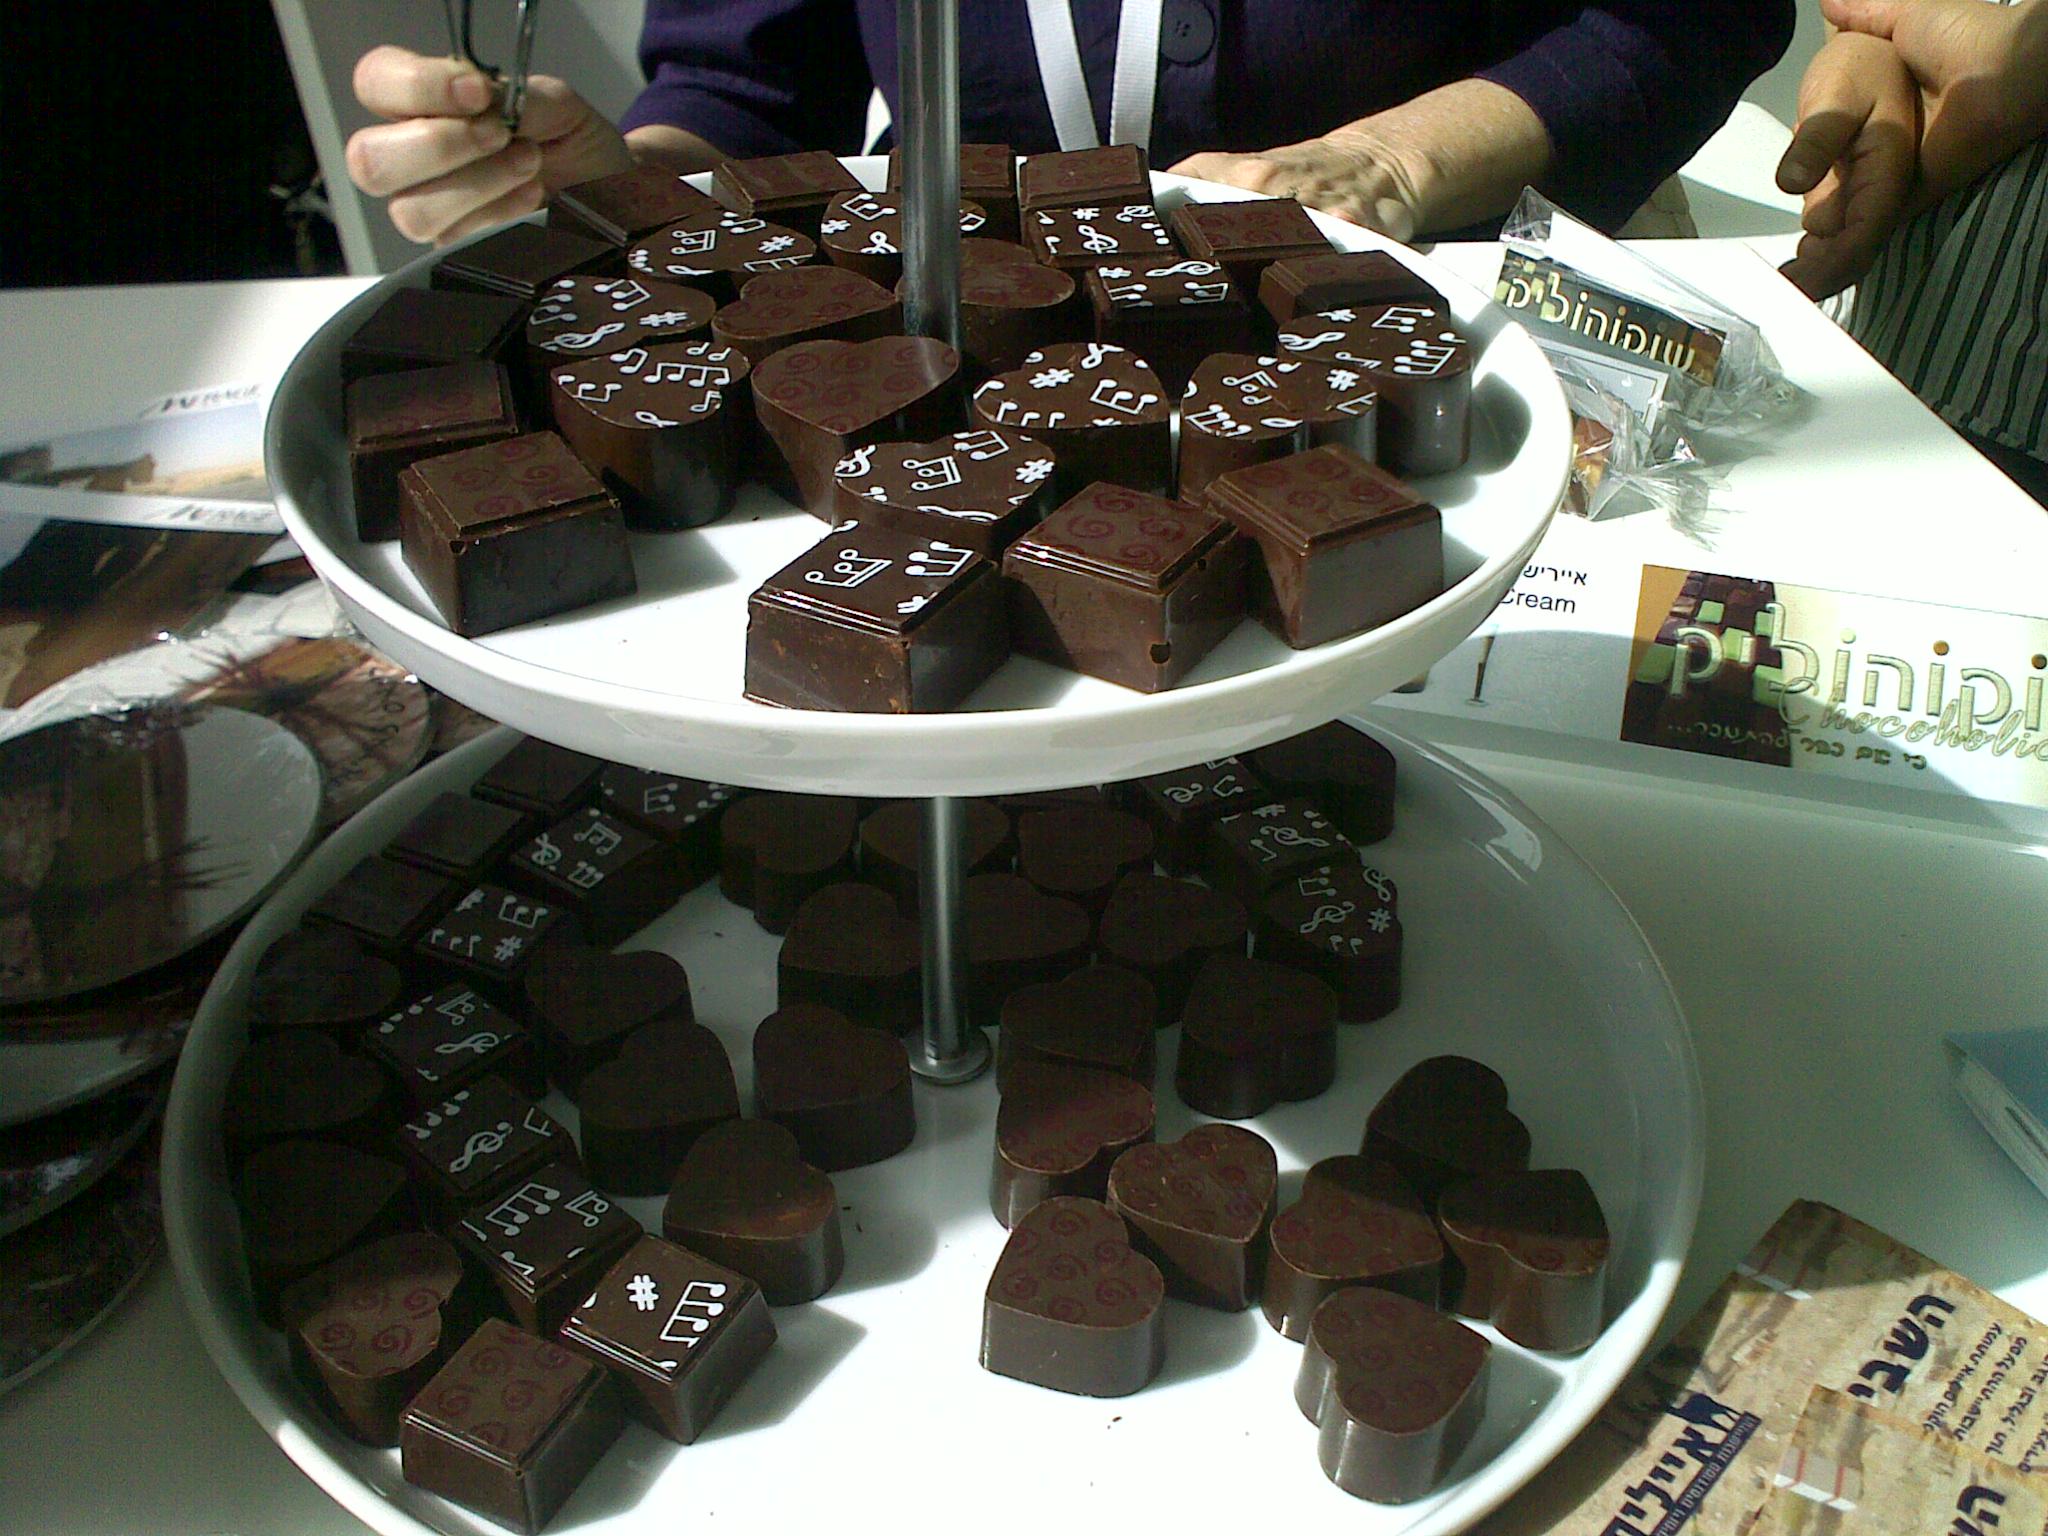 השוקולד של שוקוהוליק שחולק ע"י קרן מיראז' בועידת הנגב, מי שלא טעם הפסיד! 